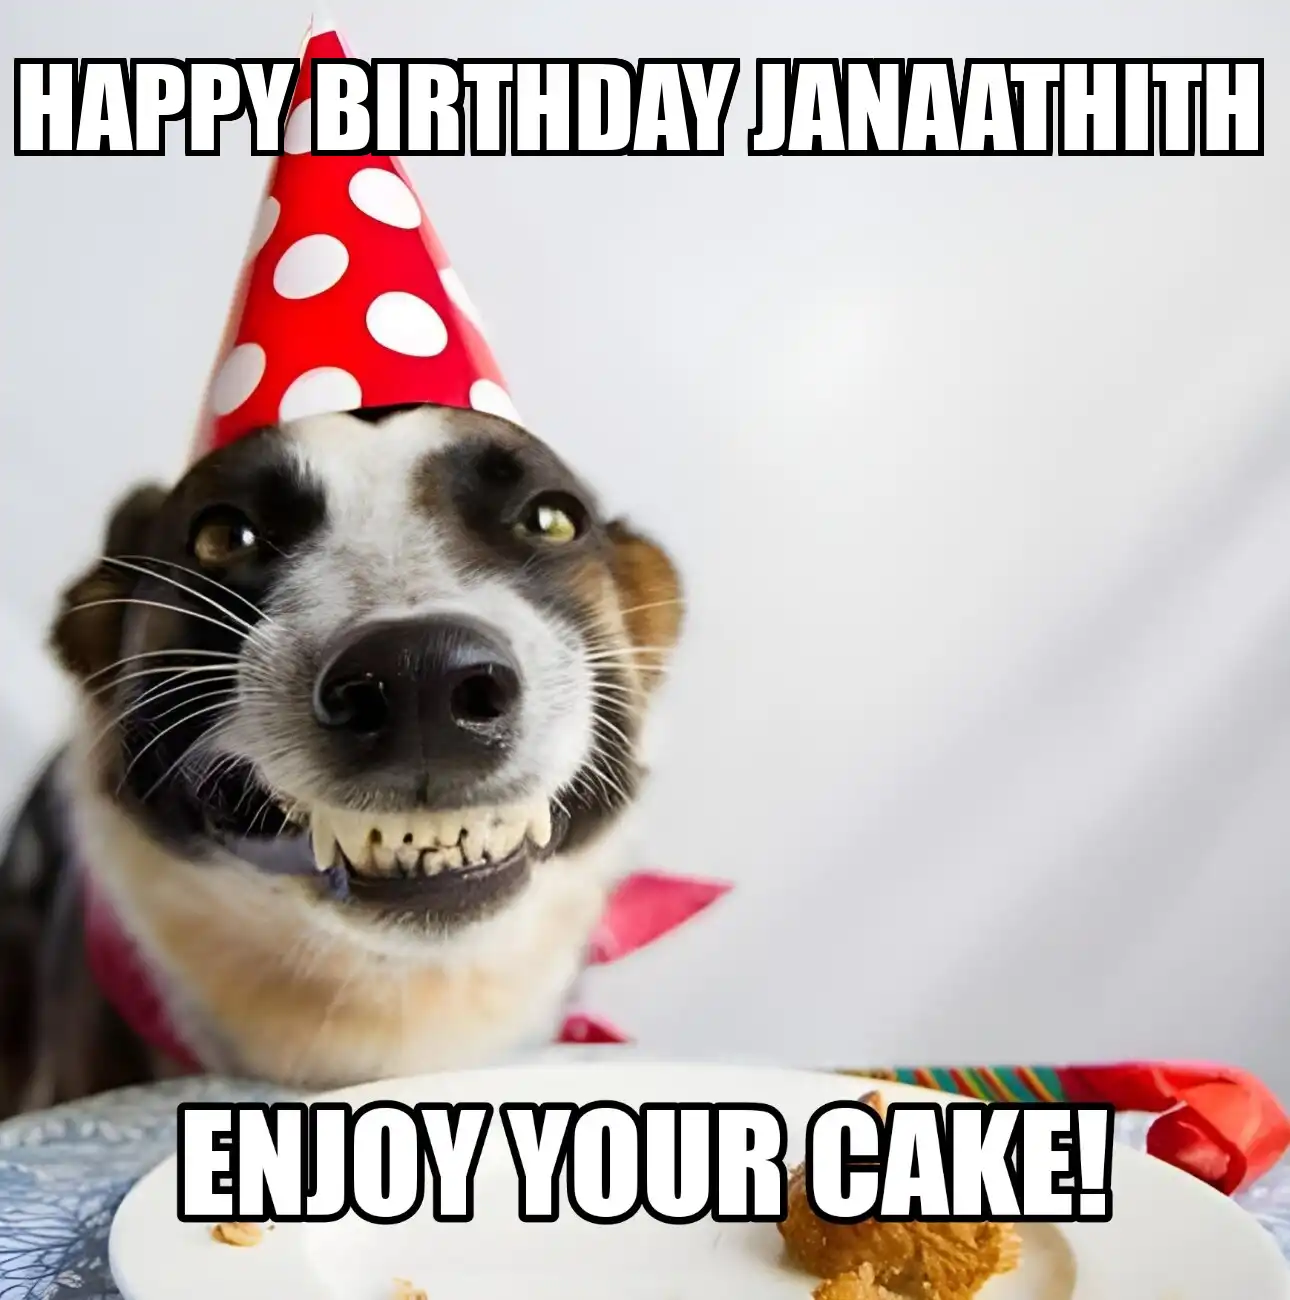 Happy Birthday Janaathith Enjoy Your Cake Dog Meme